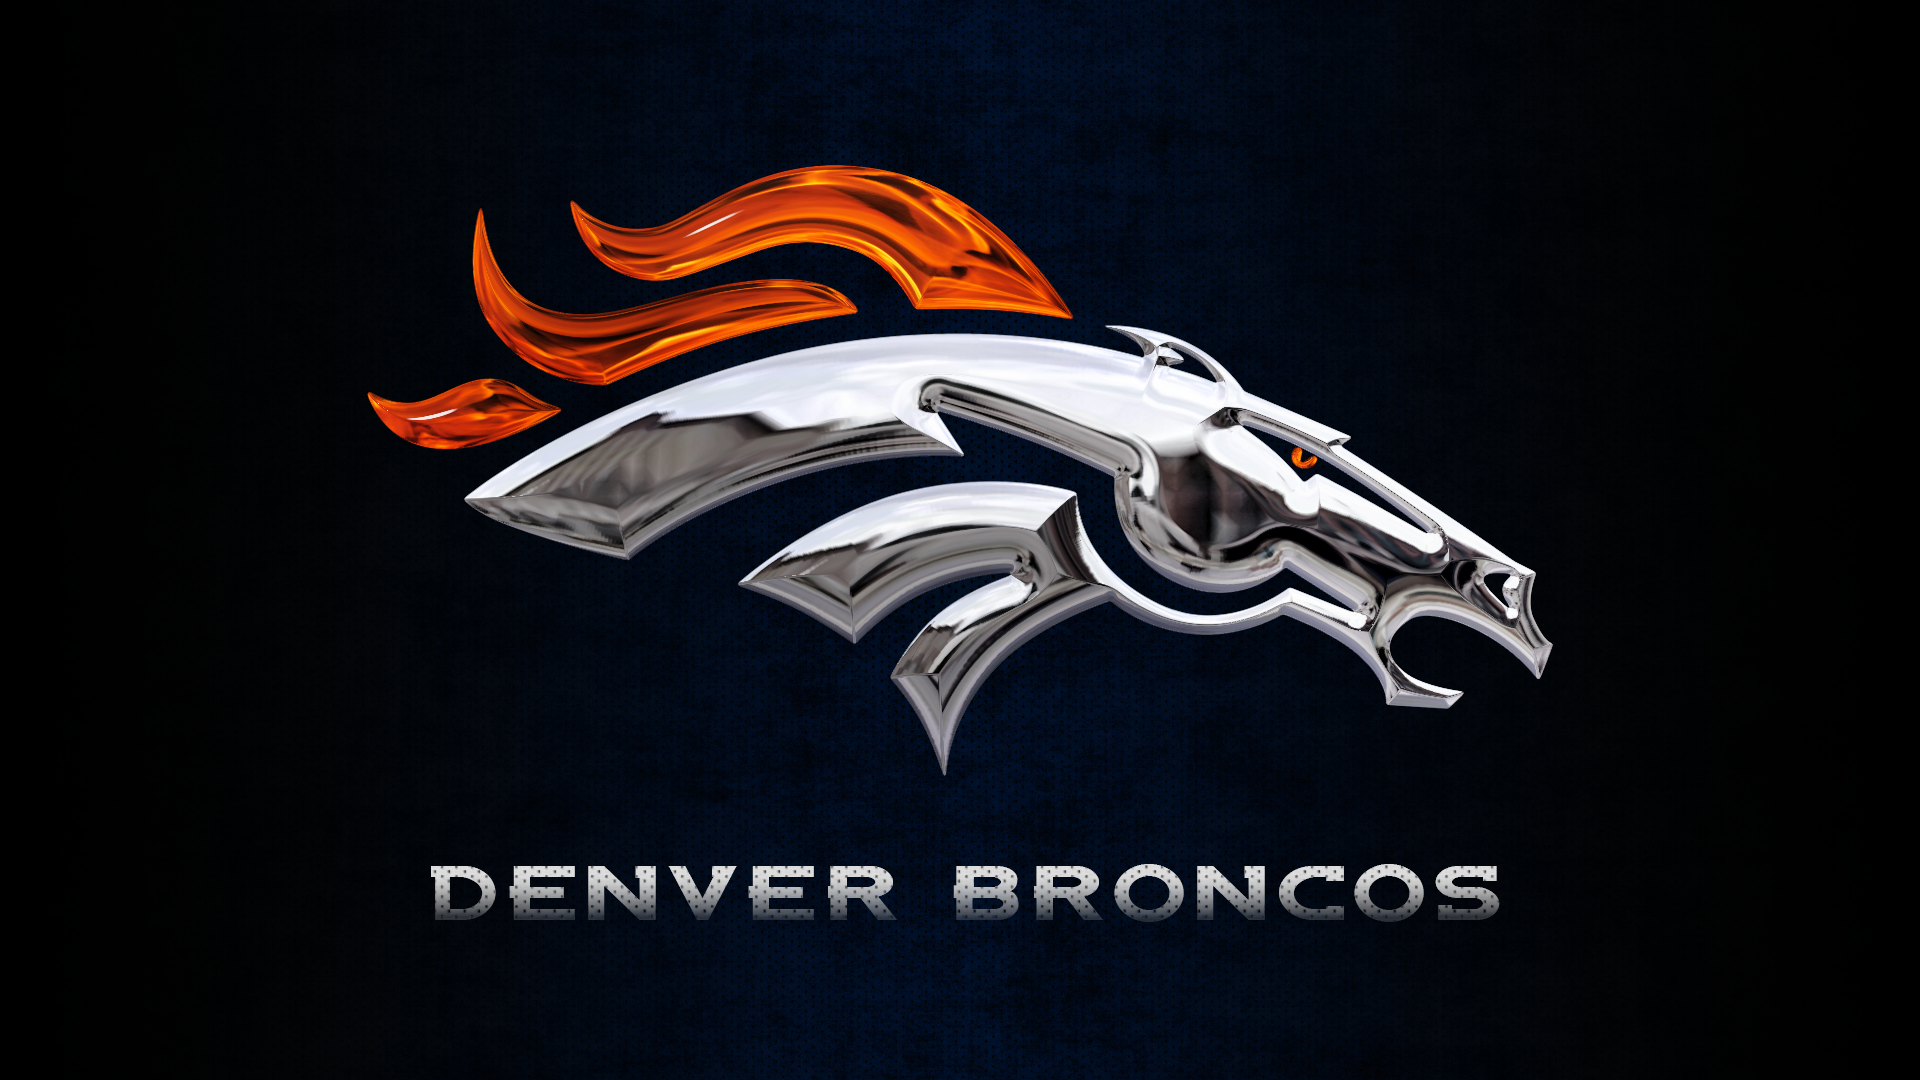 Denver Broncos Chrome Logo Wallpaper 1920x1080